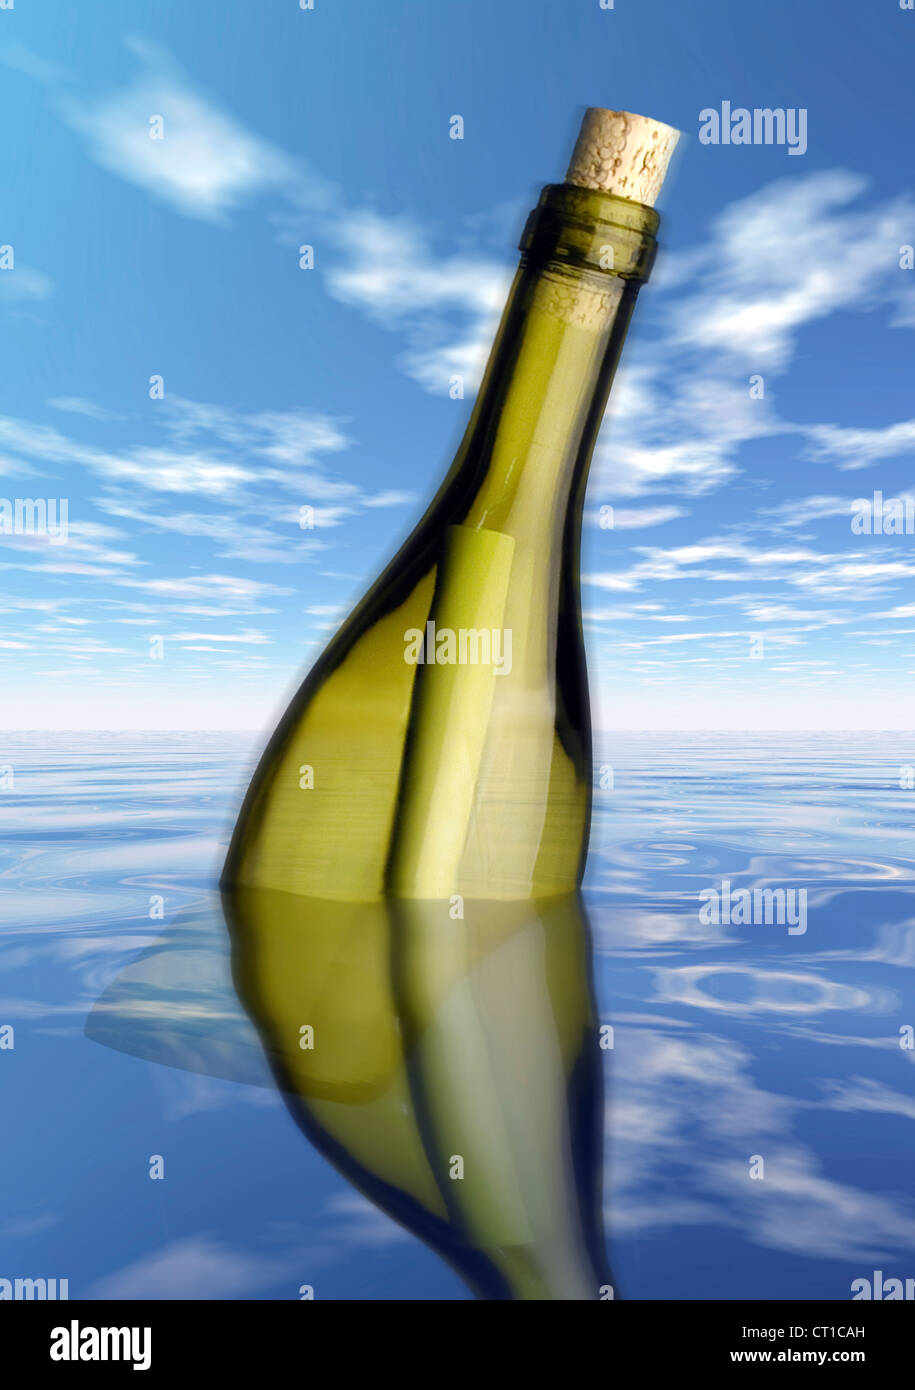 Message dans une bouteille - Flaschenpost mit Nachricht im Meer Banque D'Images